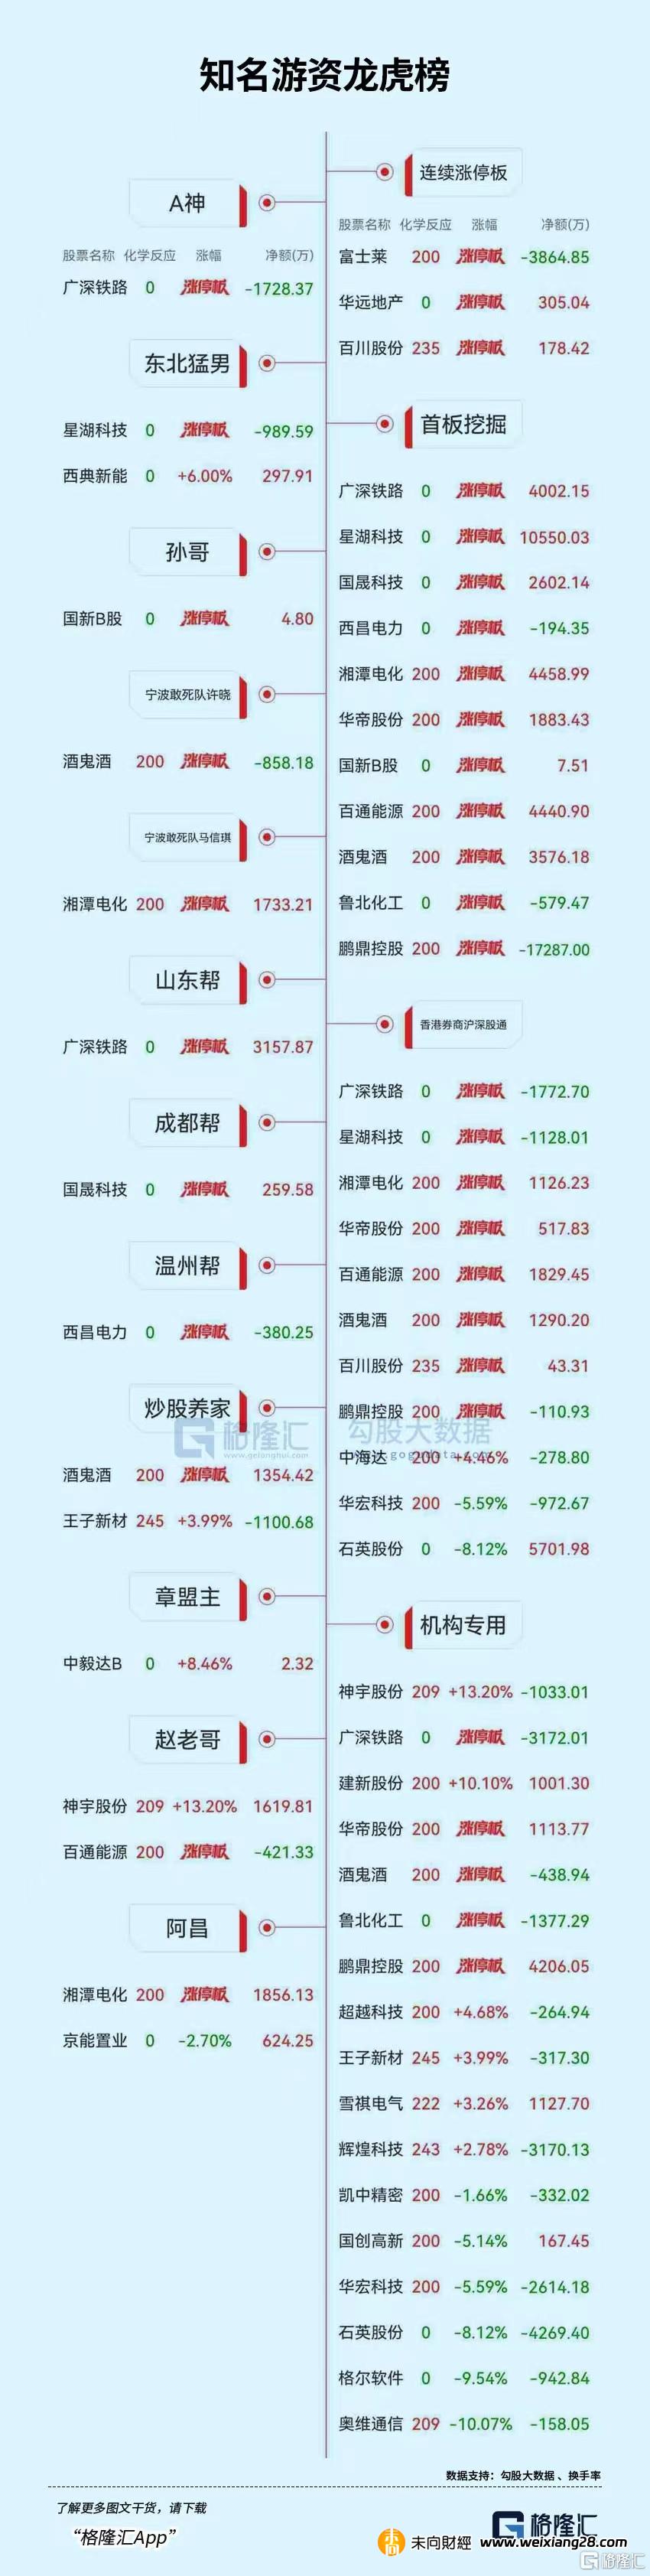 龙虎榜 | 1.73亿元资金出逃鹏鼎控股，方新侠、山东帮联手打板广深铁路插图26